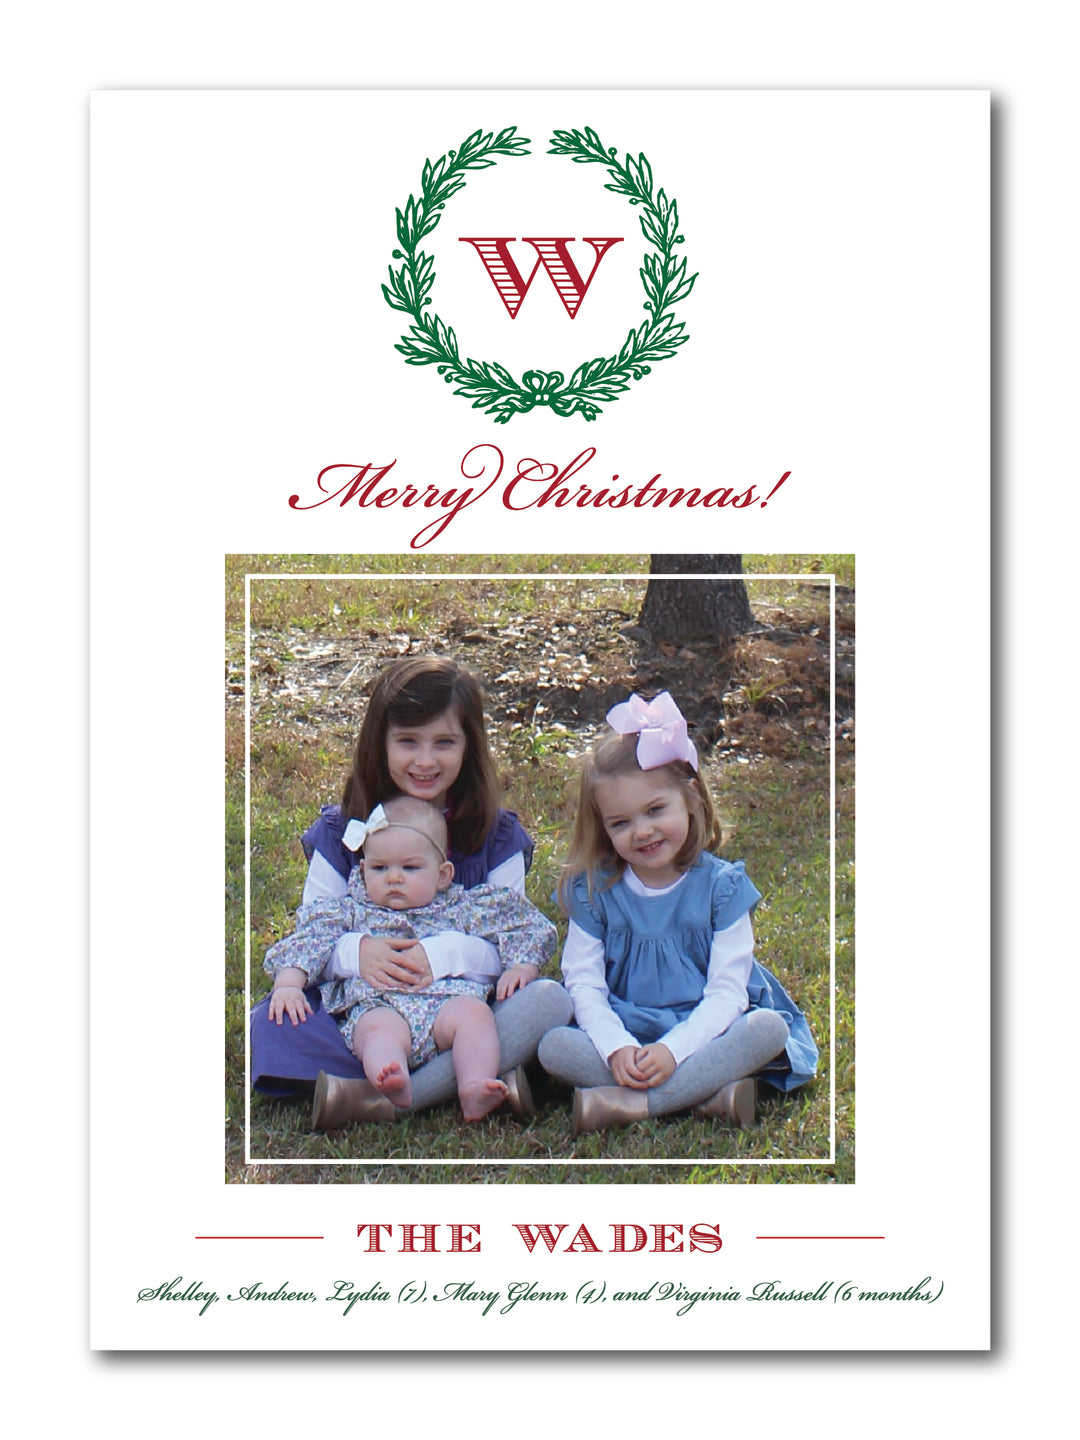 The Mary Glenn Christmas Card